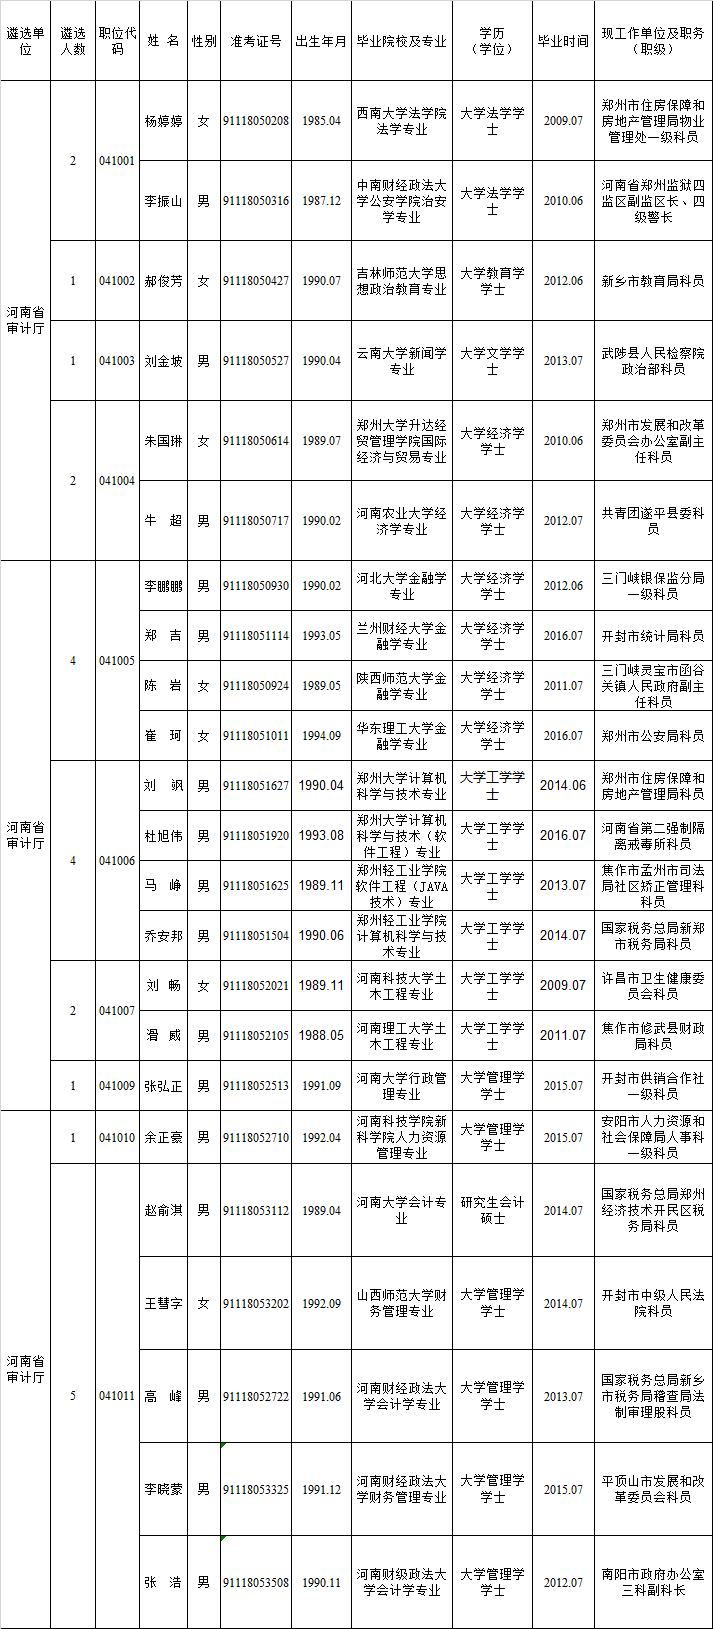 河南省审计厅2019年公开遴选公务员拟录用人员公示.png